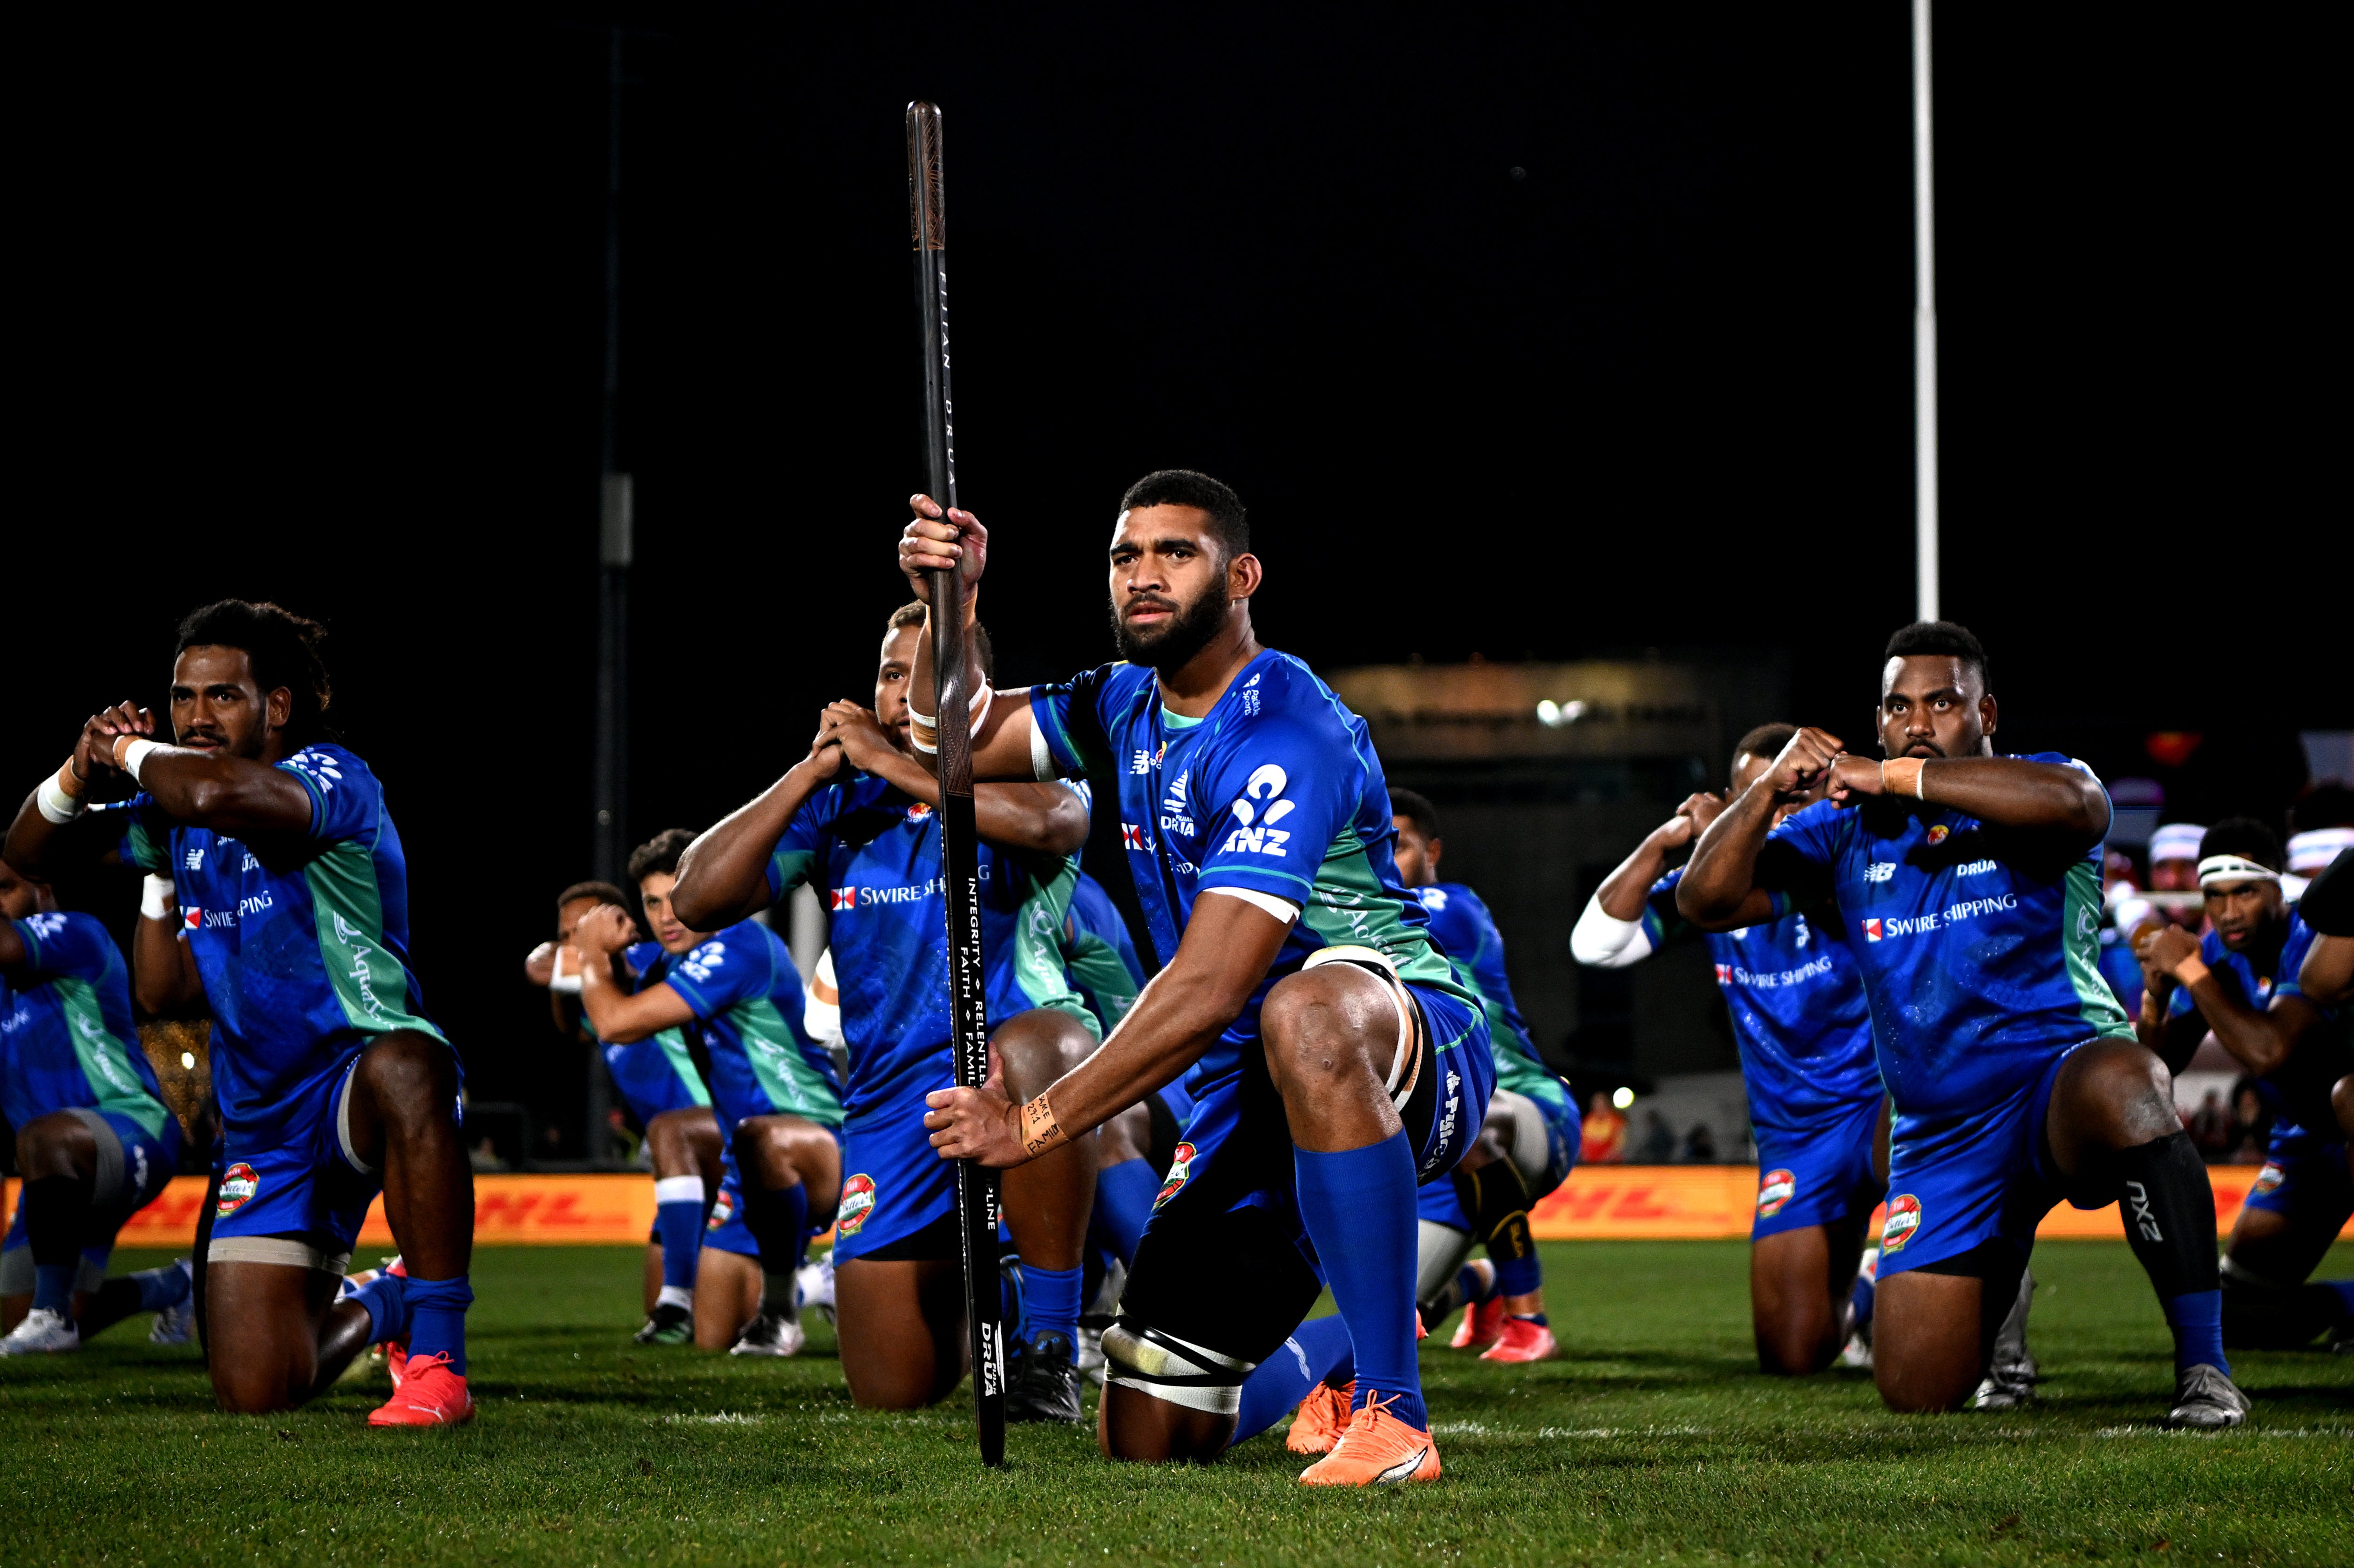 El capitán Meli Derenelagi (centro) condujo a los Fijian Drua a las semifinales de la competencia Super Rugby del Pacífico.